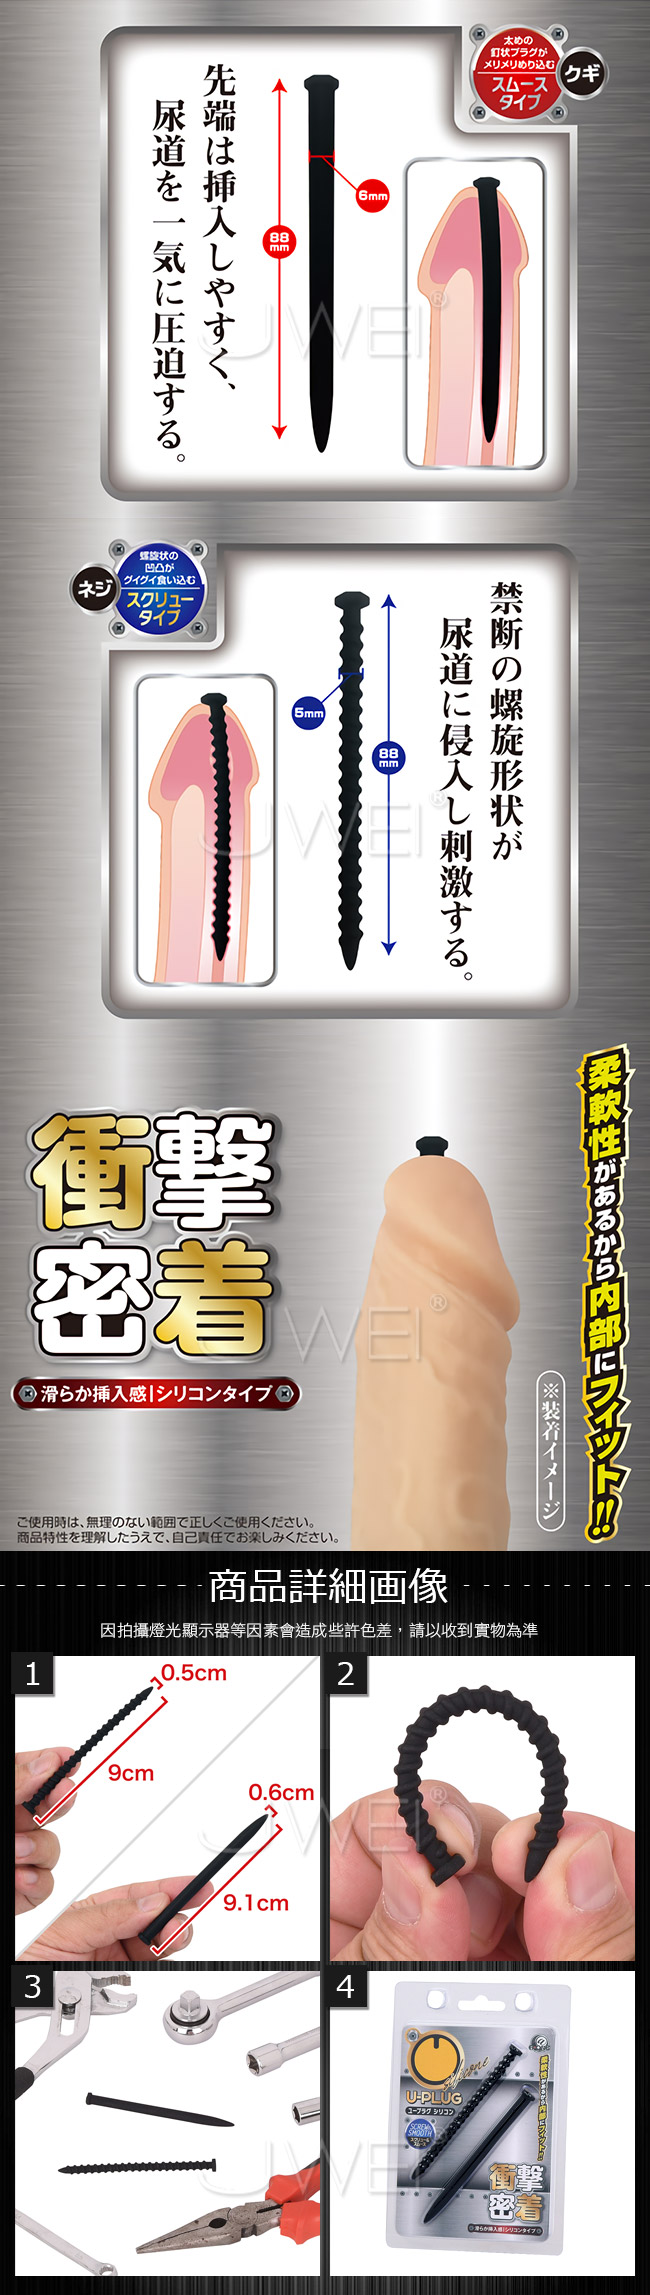 日本原裝進口A-ONE．U-Plug Silicone 矽膠螺絲釘馬眼尿道刺激器